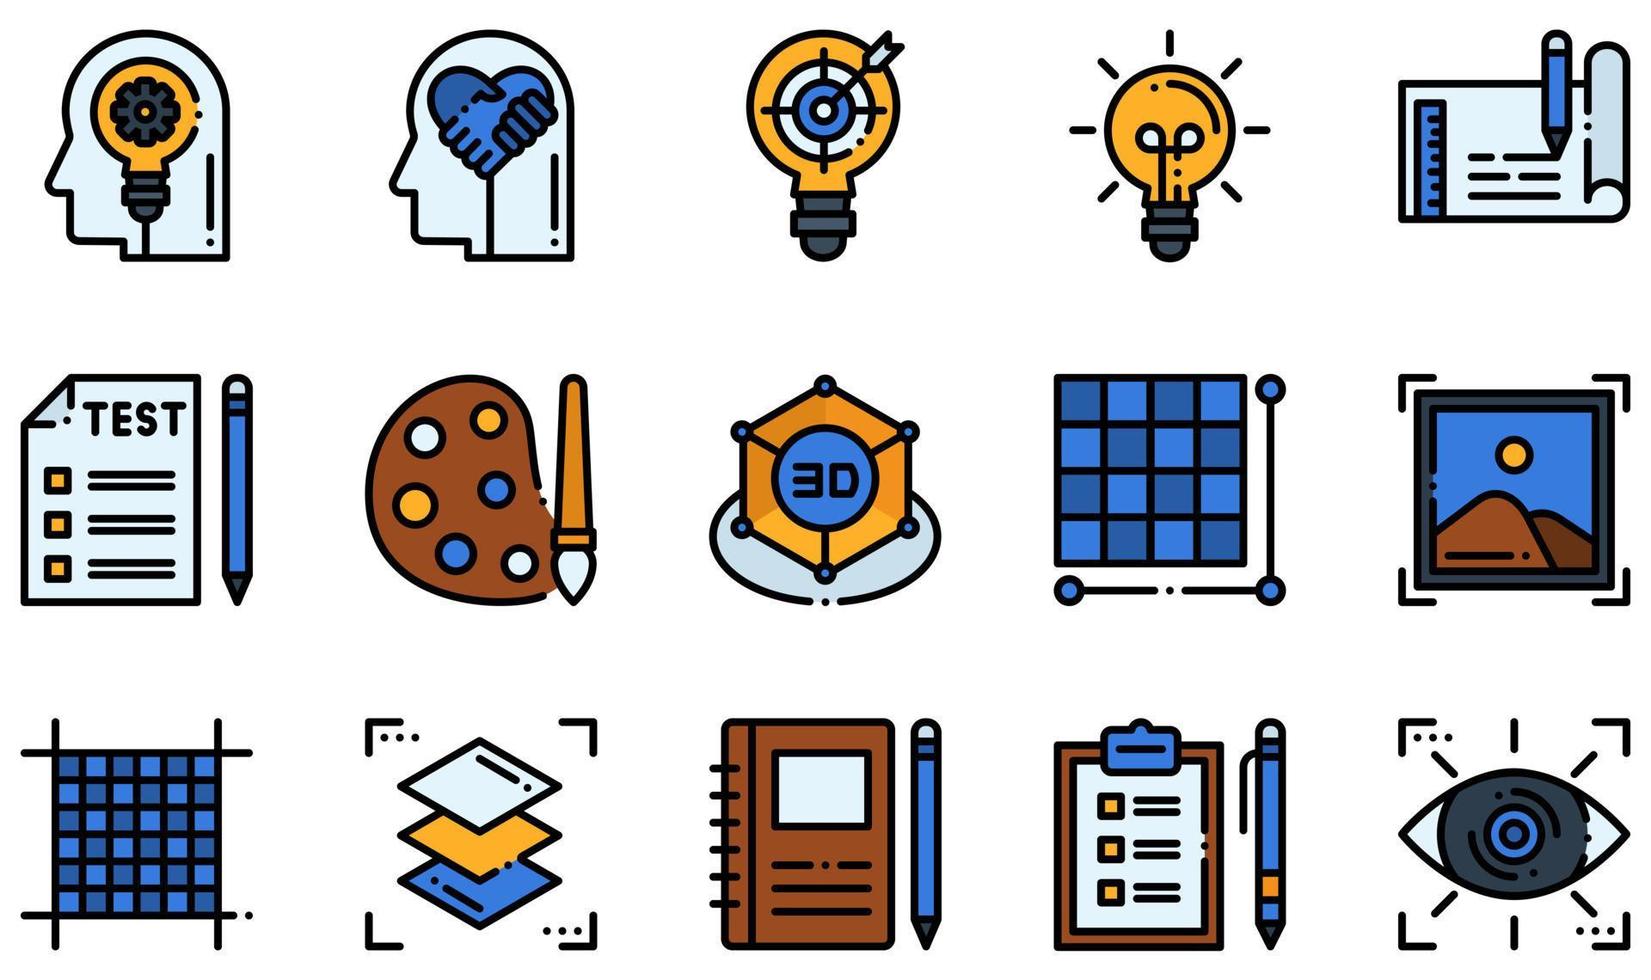 conjunto de ícones vetoriais relacionados ao design thinking. contém ícones como pensamento criativo, empatia, protótipo, design 3D, pixels, caderno de desenho e muito mais. vetor